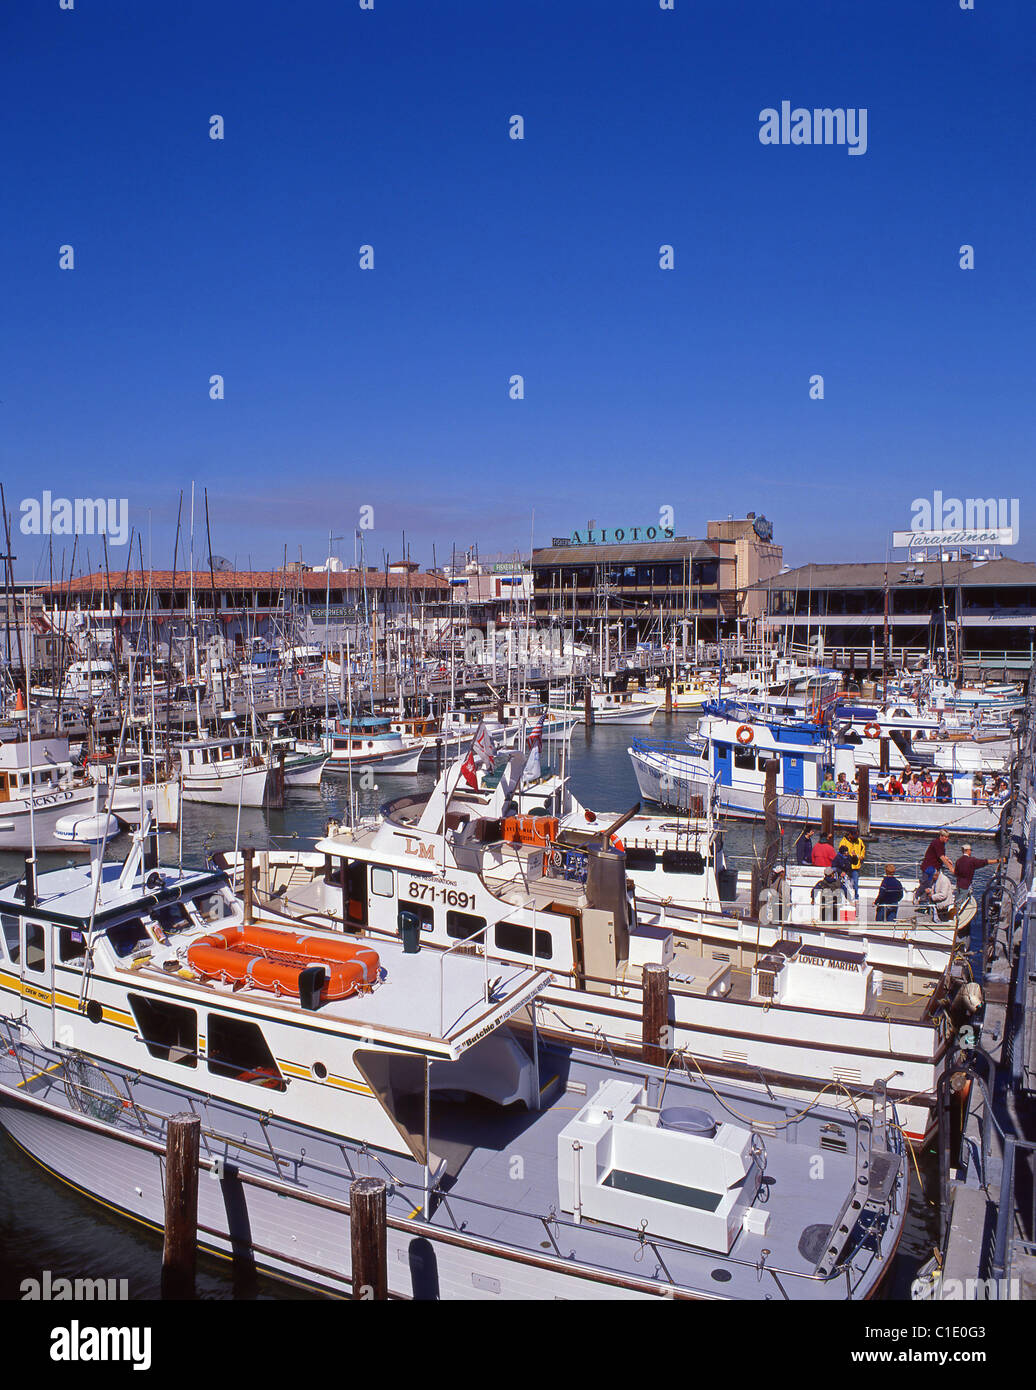 Yacht marina à Fisherman's Wharf, San Francisco, Californie, États-Unis d'Amérique Banque D'Images